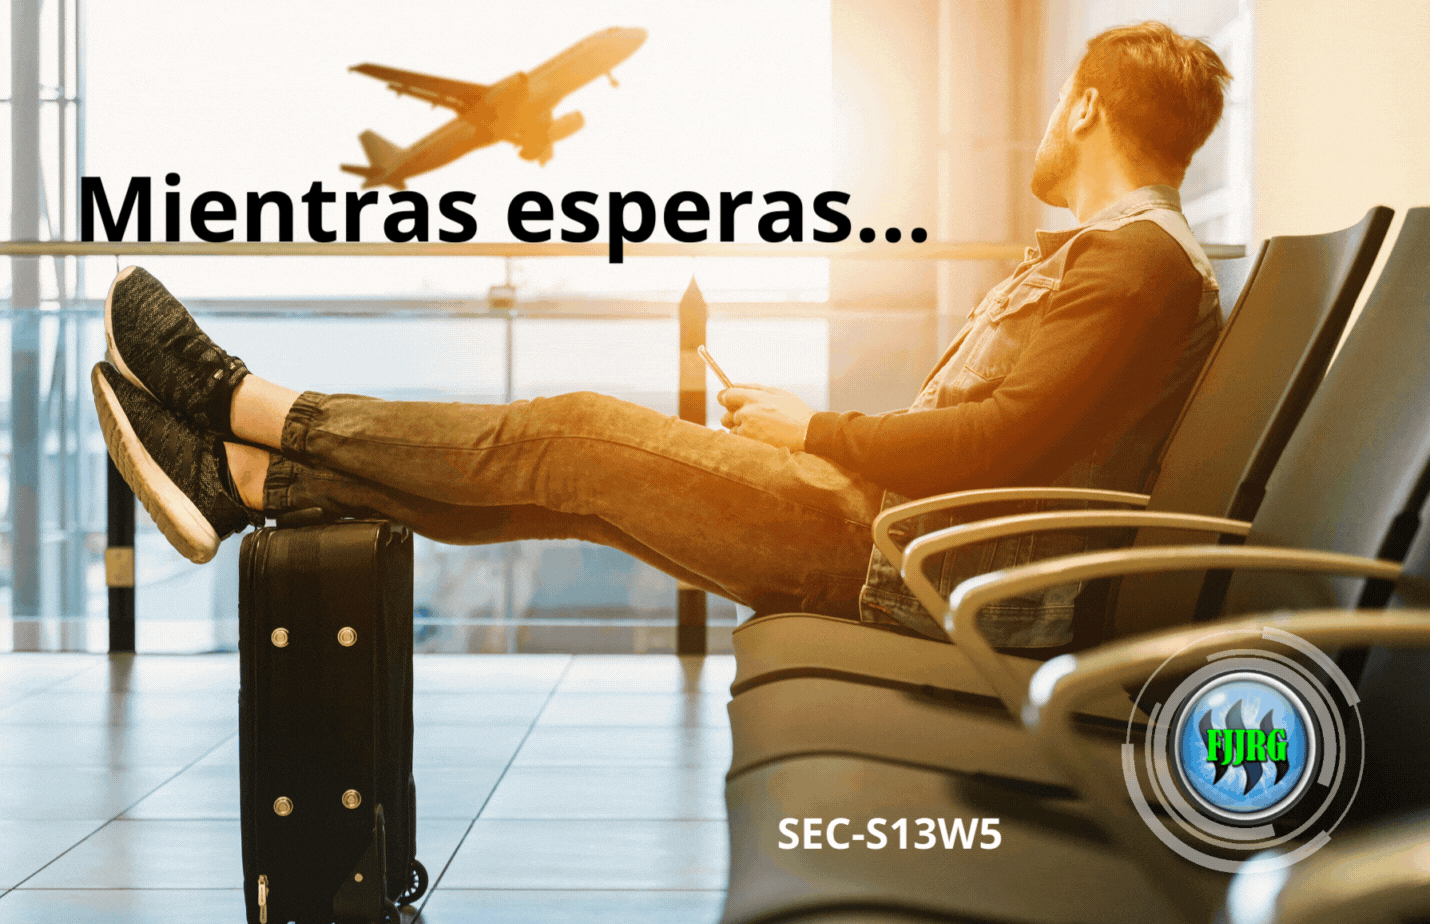 SEC-S13W5 – Mientras esperas... (1).gif